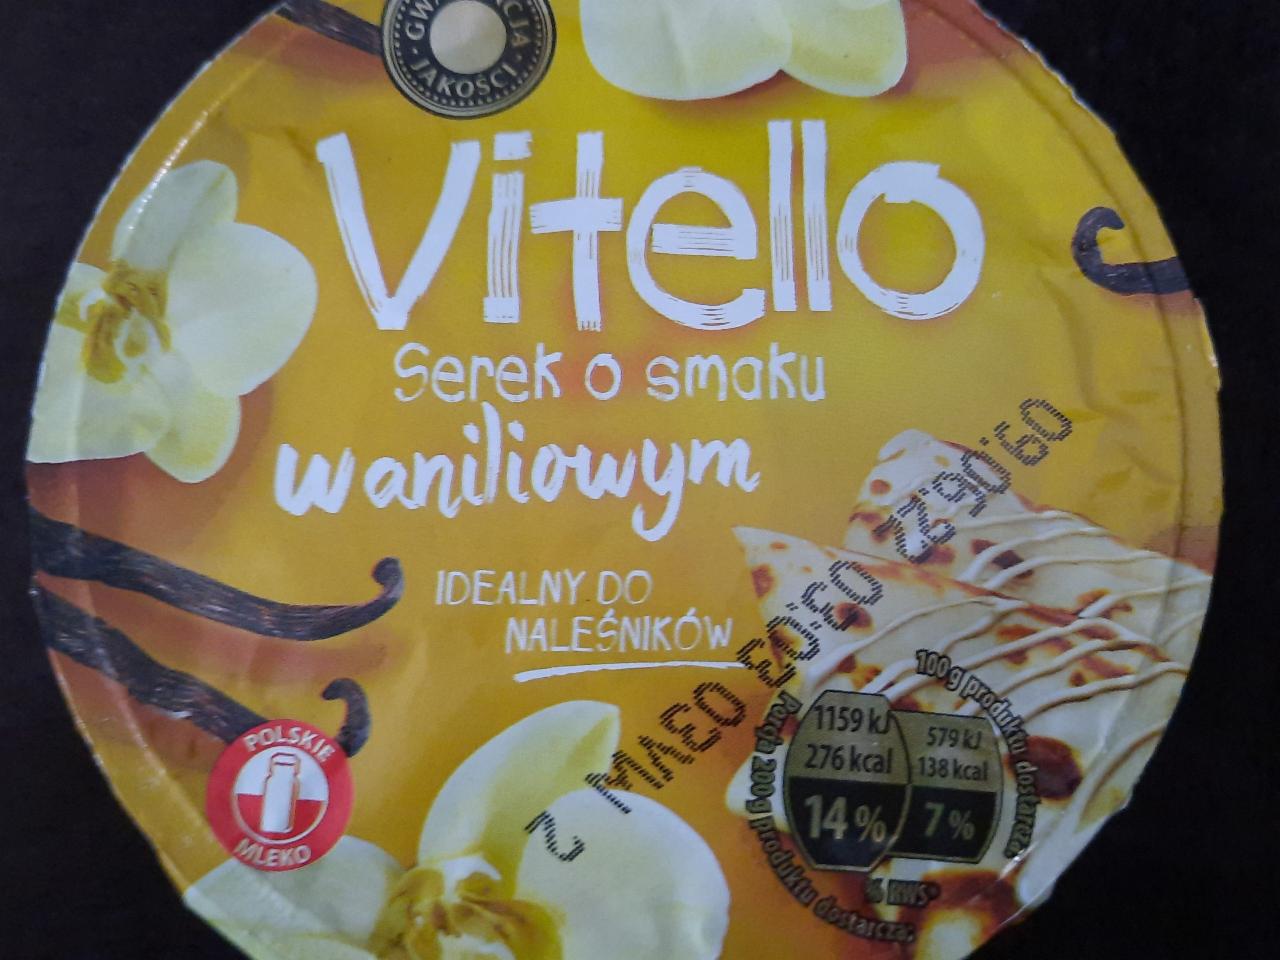 Zdjęcia - Serek o smaku waniliowym Vitello